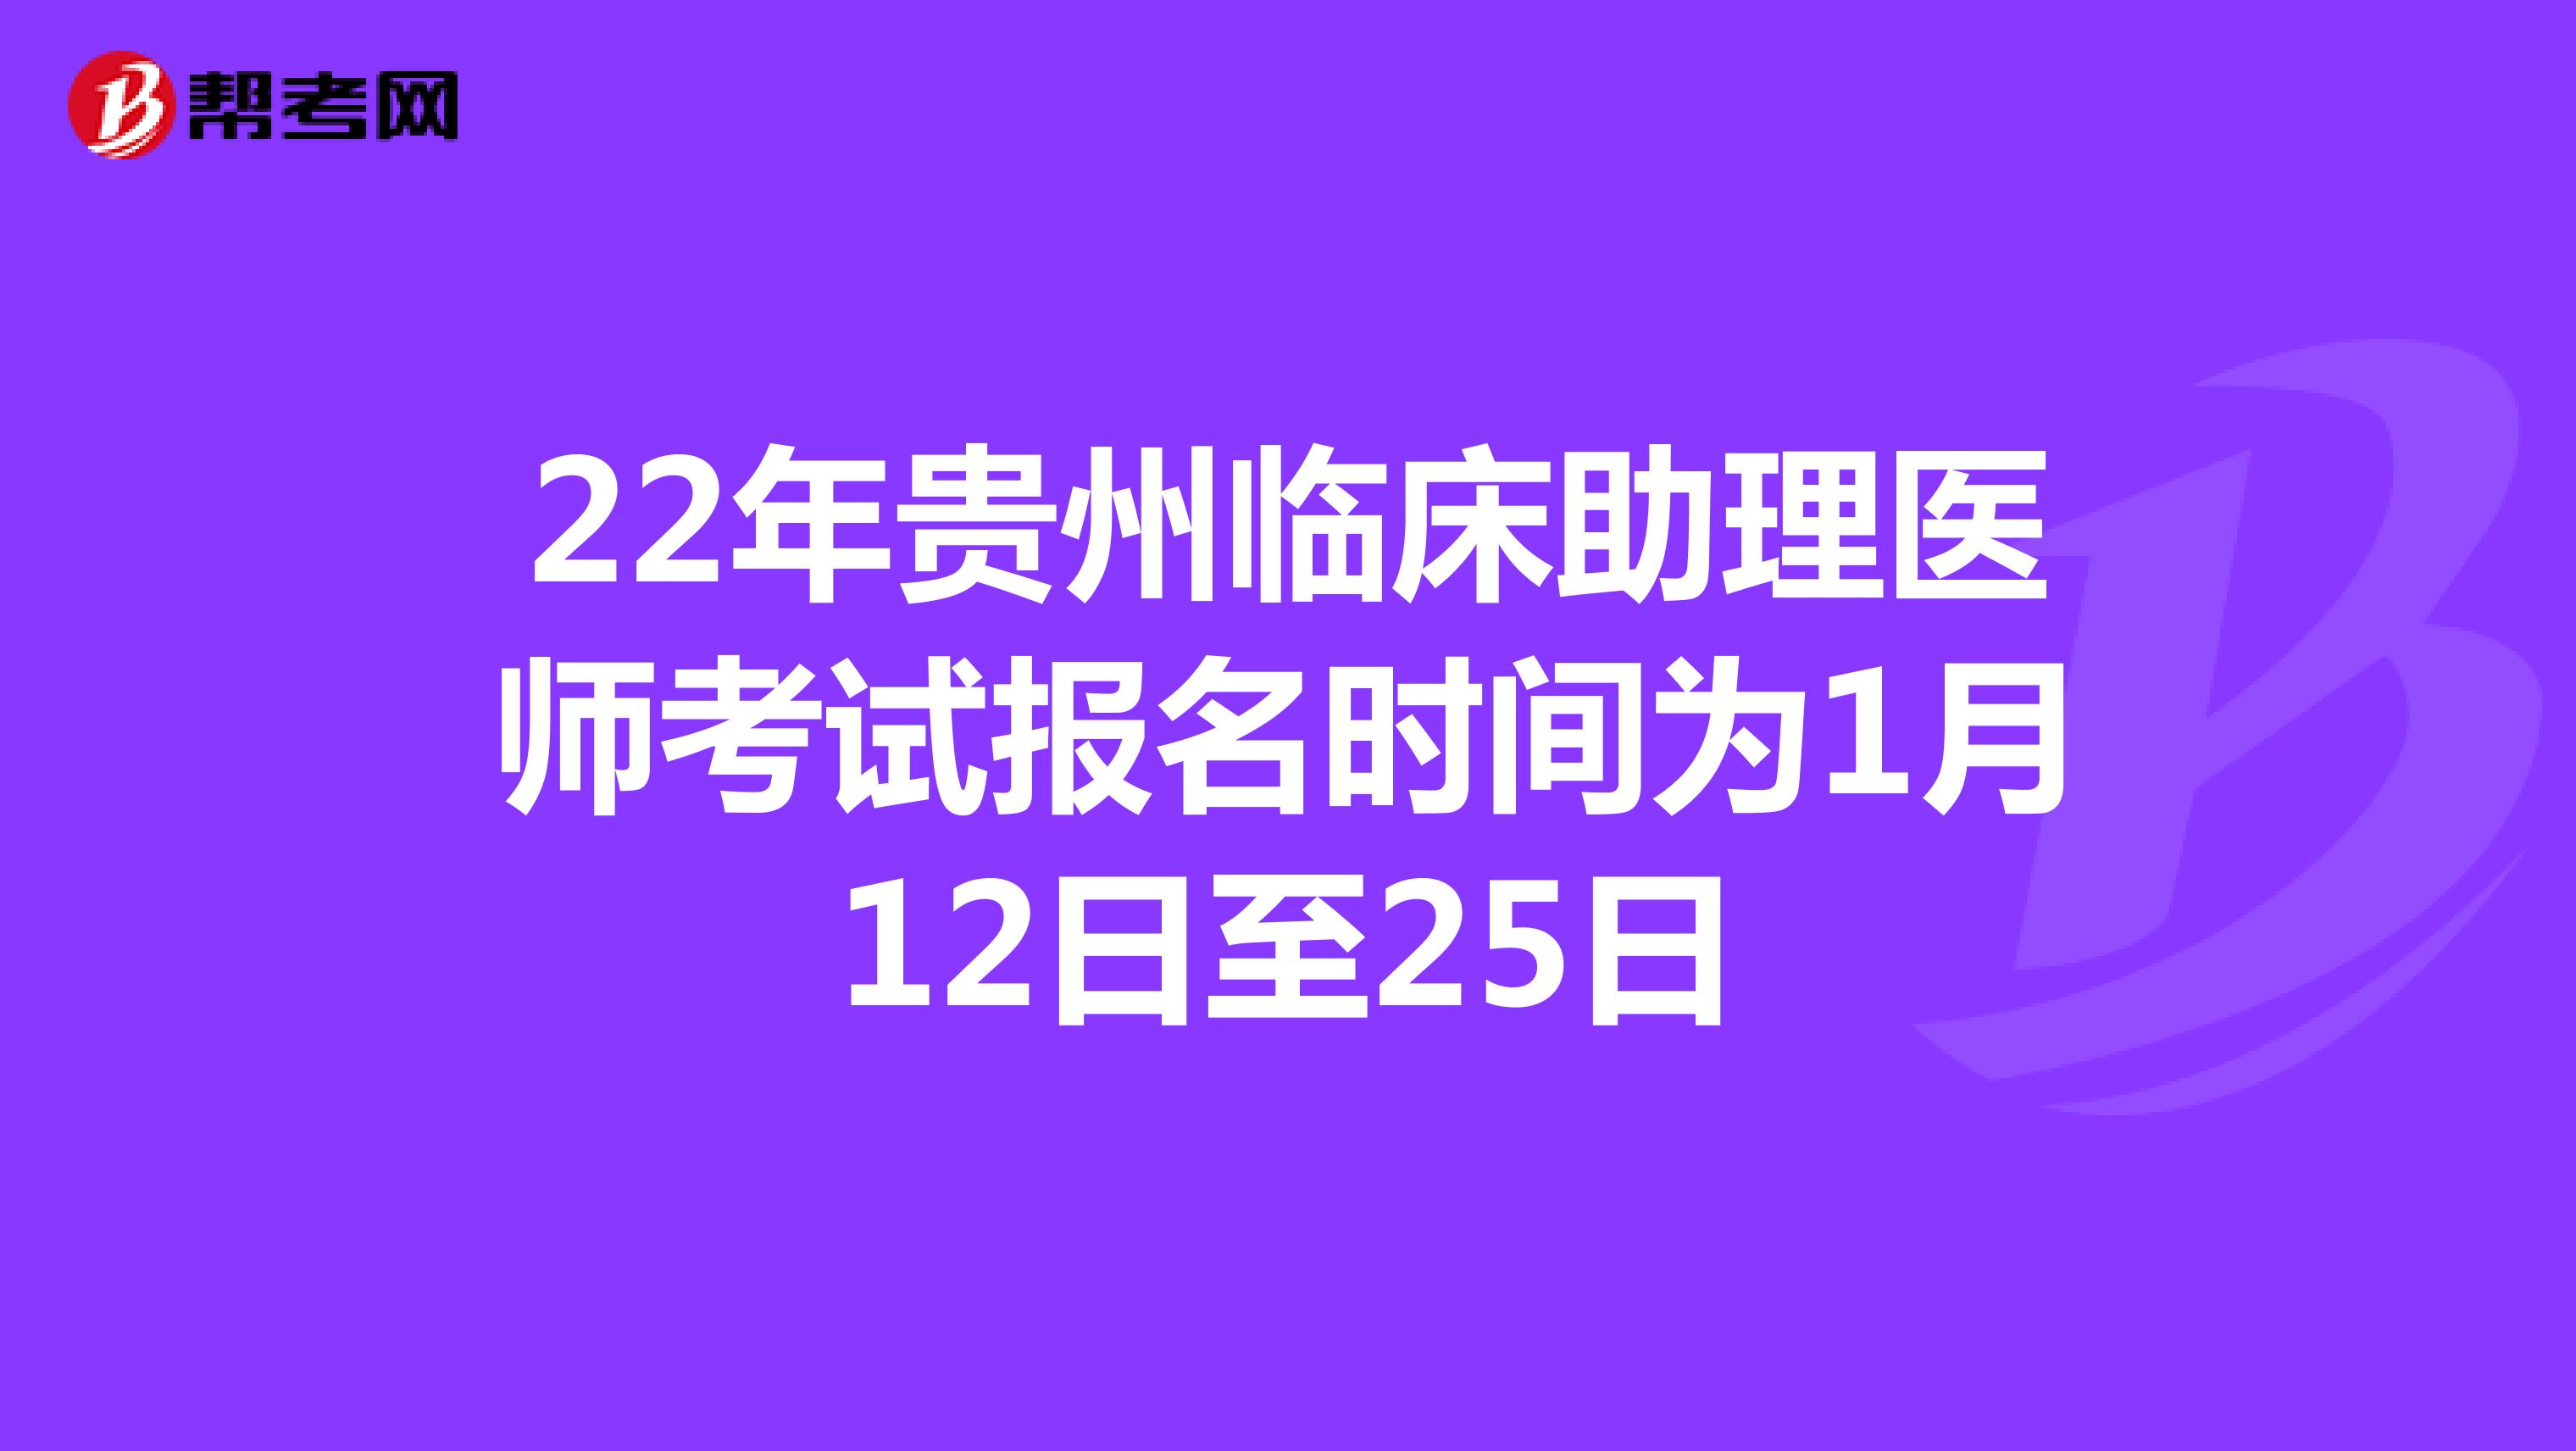 22年贵州临床助理医师考试报名时间为1月12日至25日